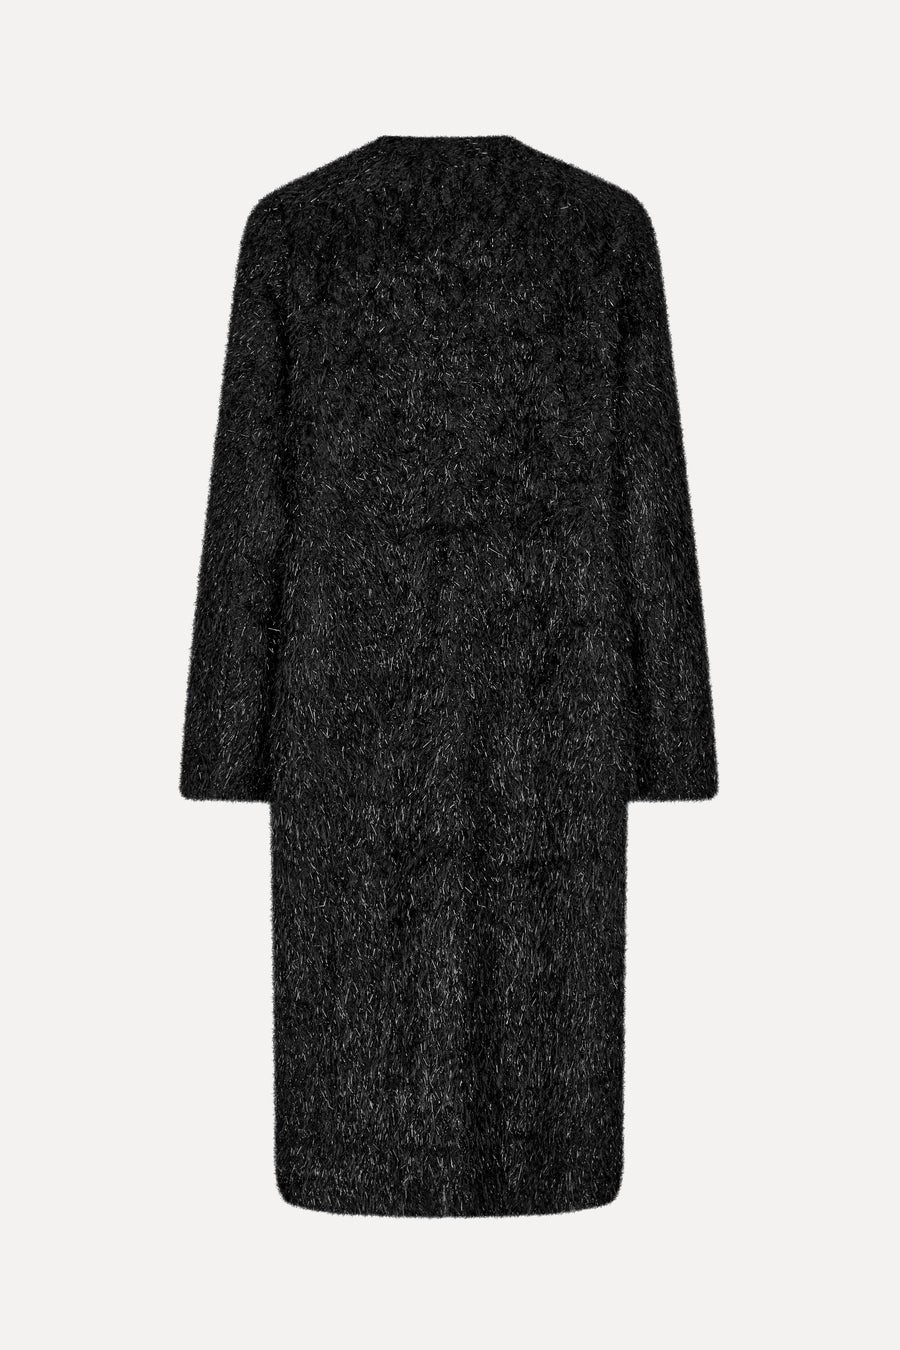 Stine Goya Alec Coat - Fluffy Black